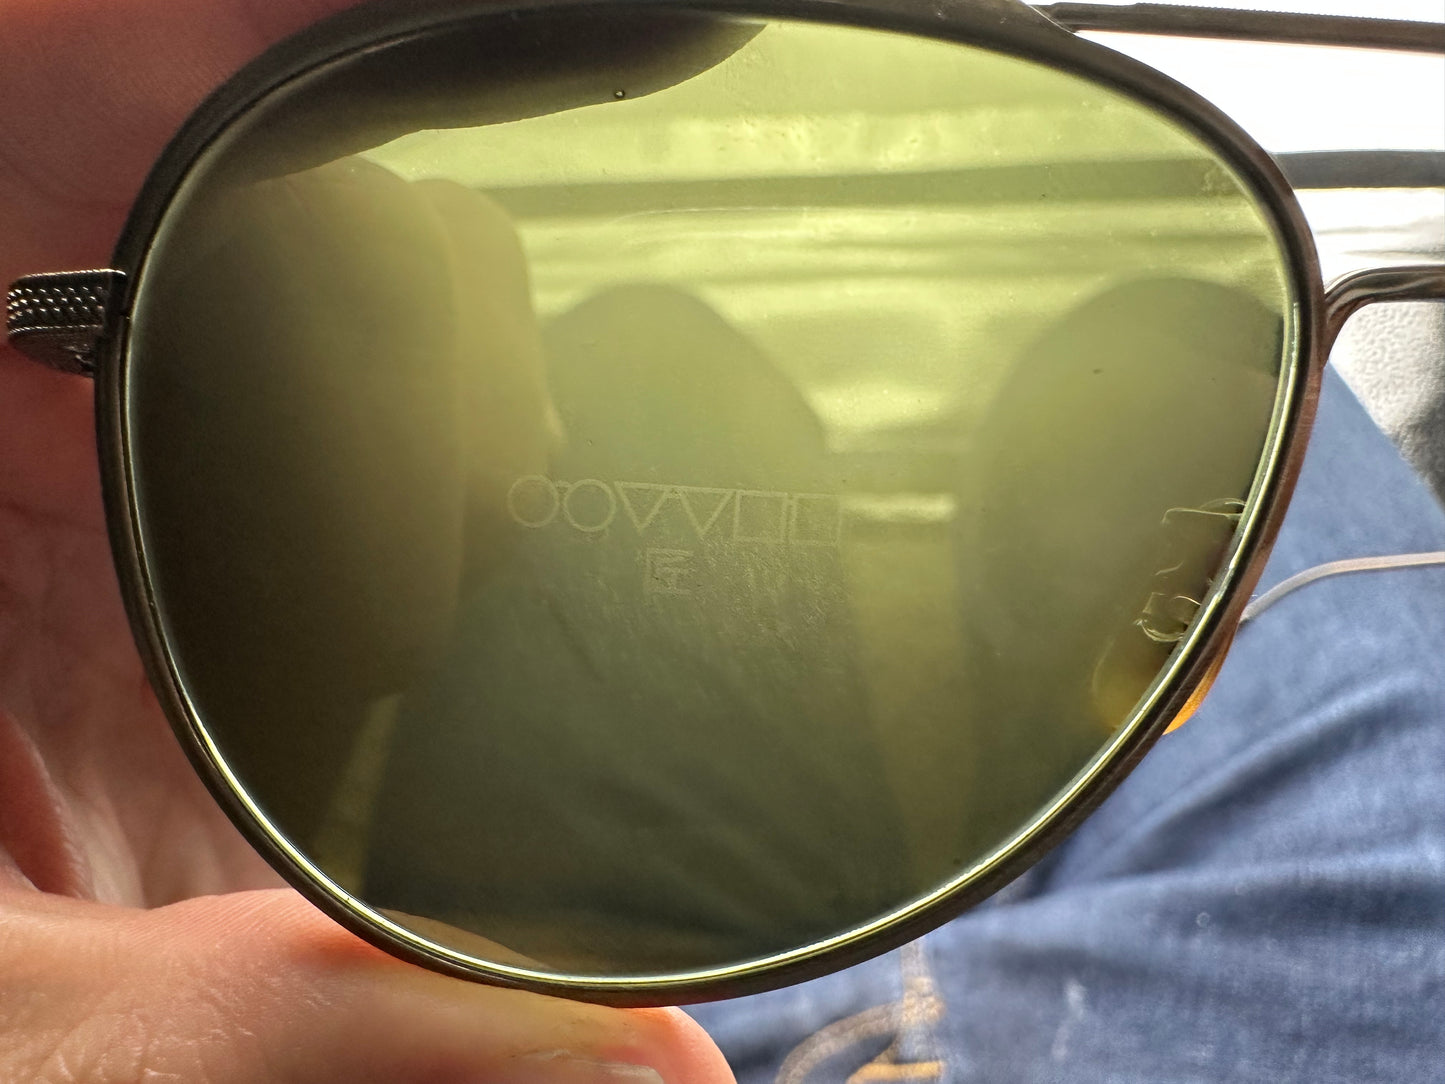 Oliver Peoples TK-3 OV 1276ST 56mm Antique Gold G-15 528452 Sunglasses